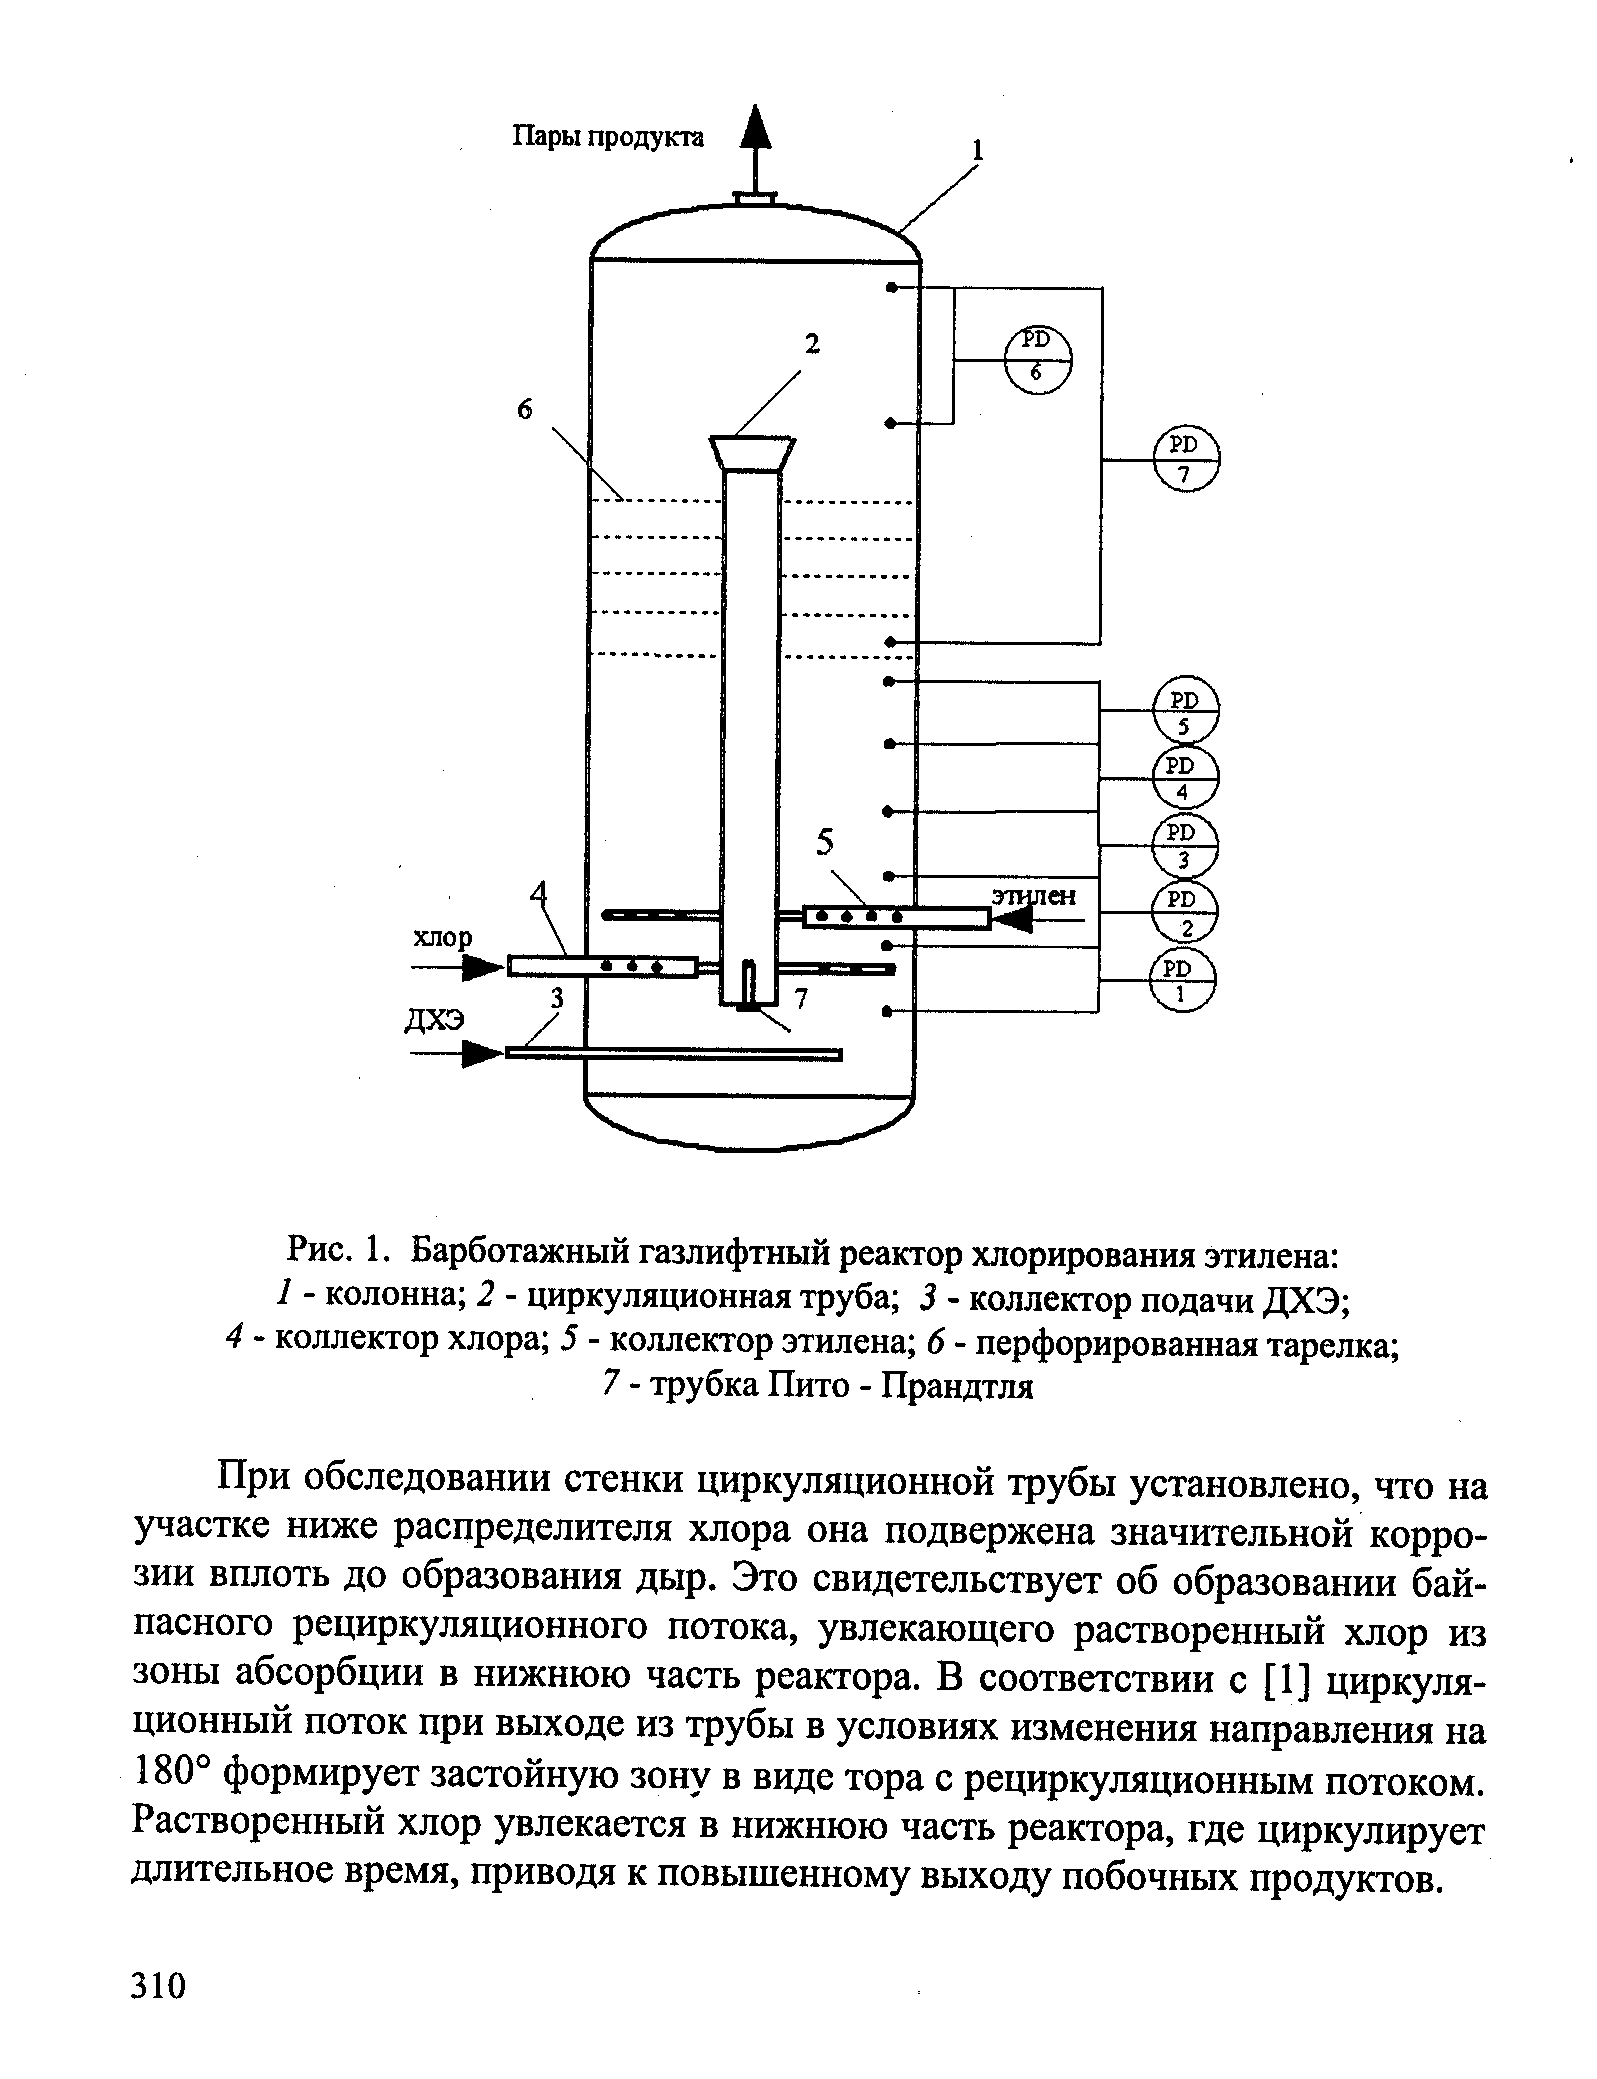 Рис. 1. Барботажный газлифтный реактор хлорирования этилена 
